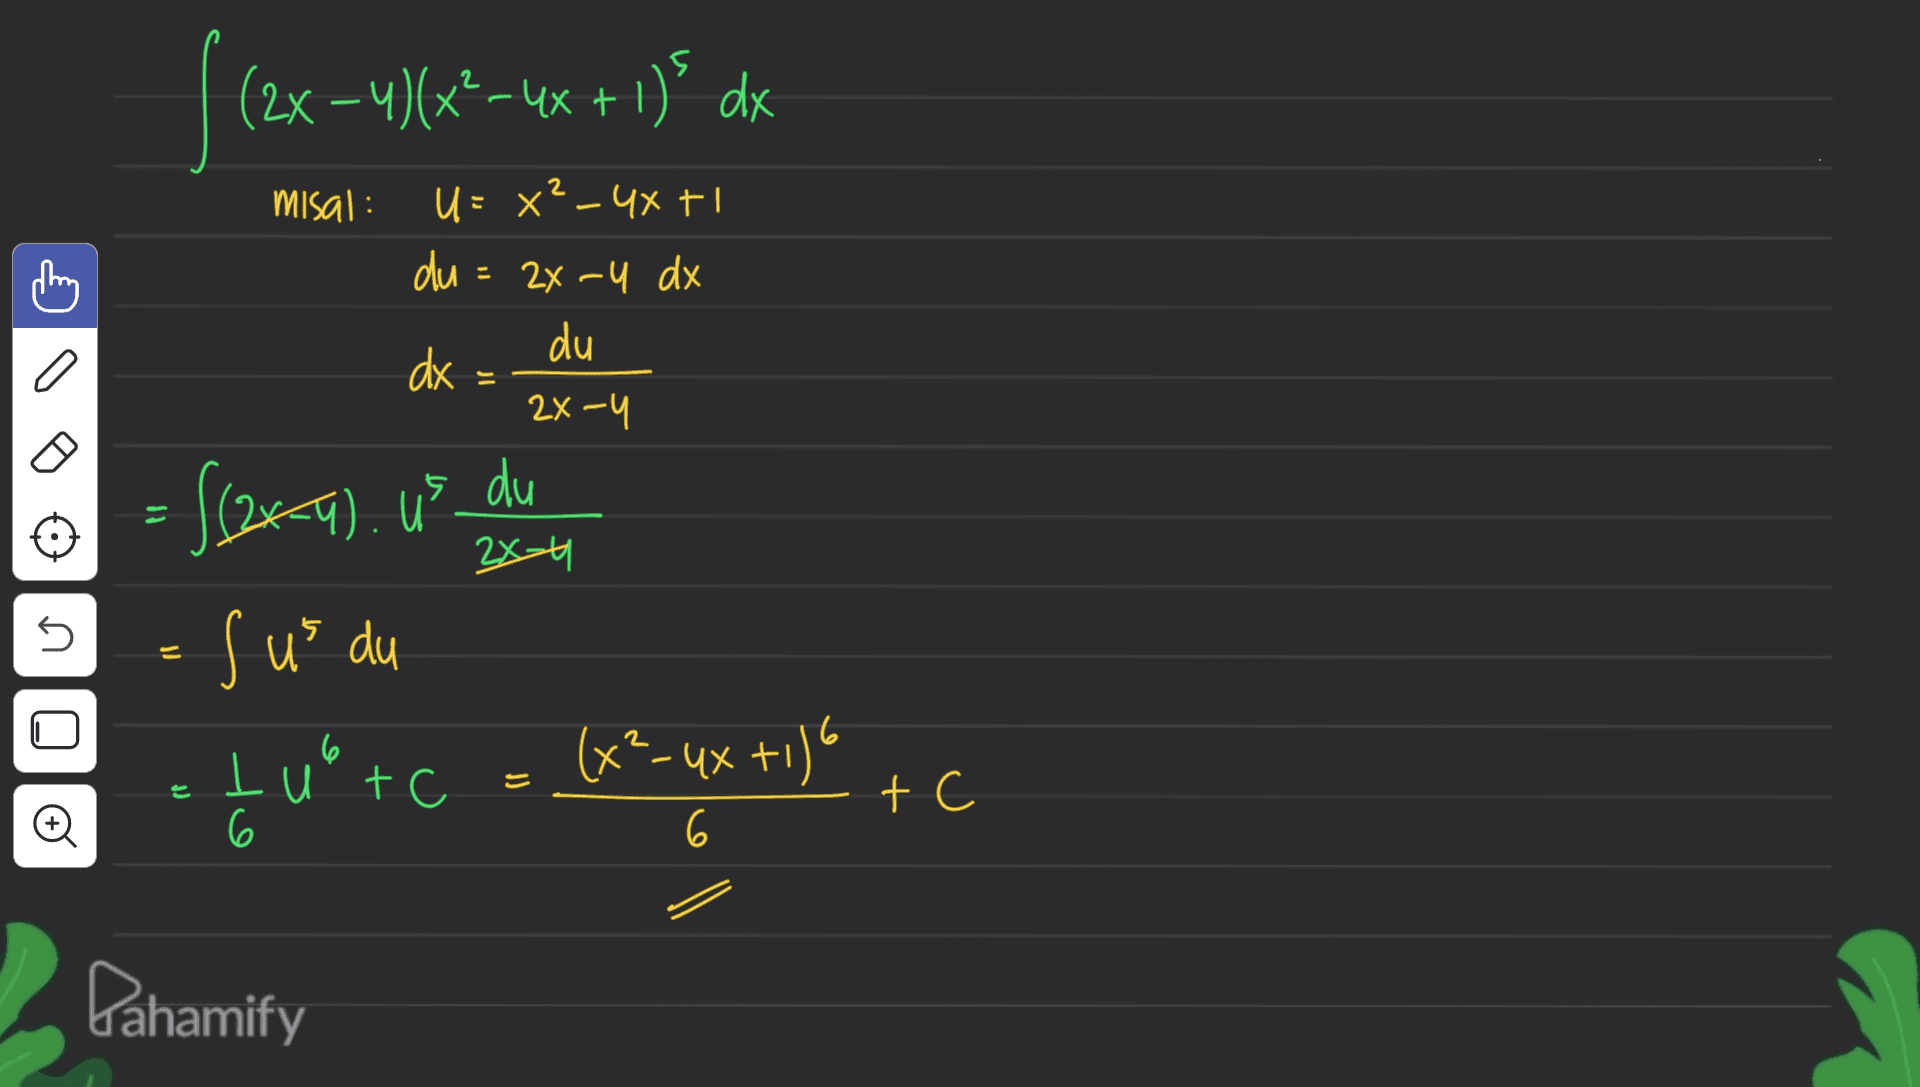 (2x –4)(x²-4x + 1)' dx " misal: U = x² - 4x +I du = 24-U dx du dx 2x-4 is du 2x-4 5 = {(244). Us du sus du (x²-4x+1) U tuote E t Đ 6 6 Pahamify 